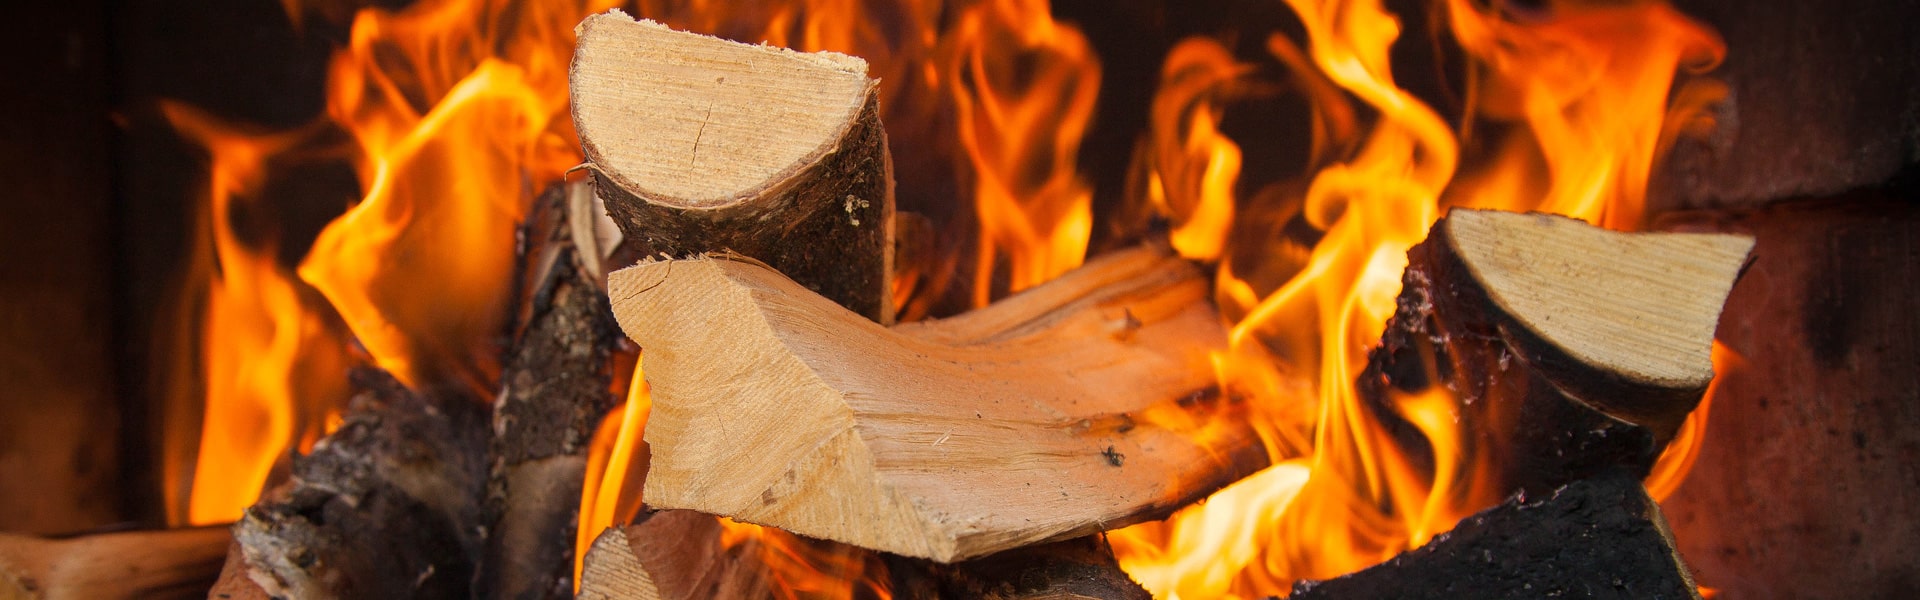 Drewno opałowe na tle ognia Slajd #3